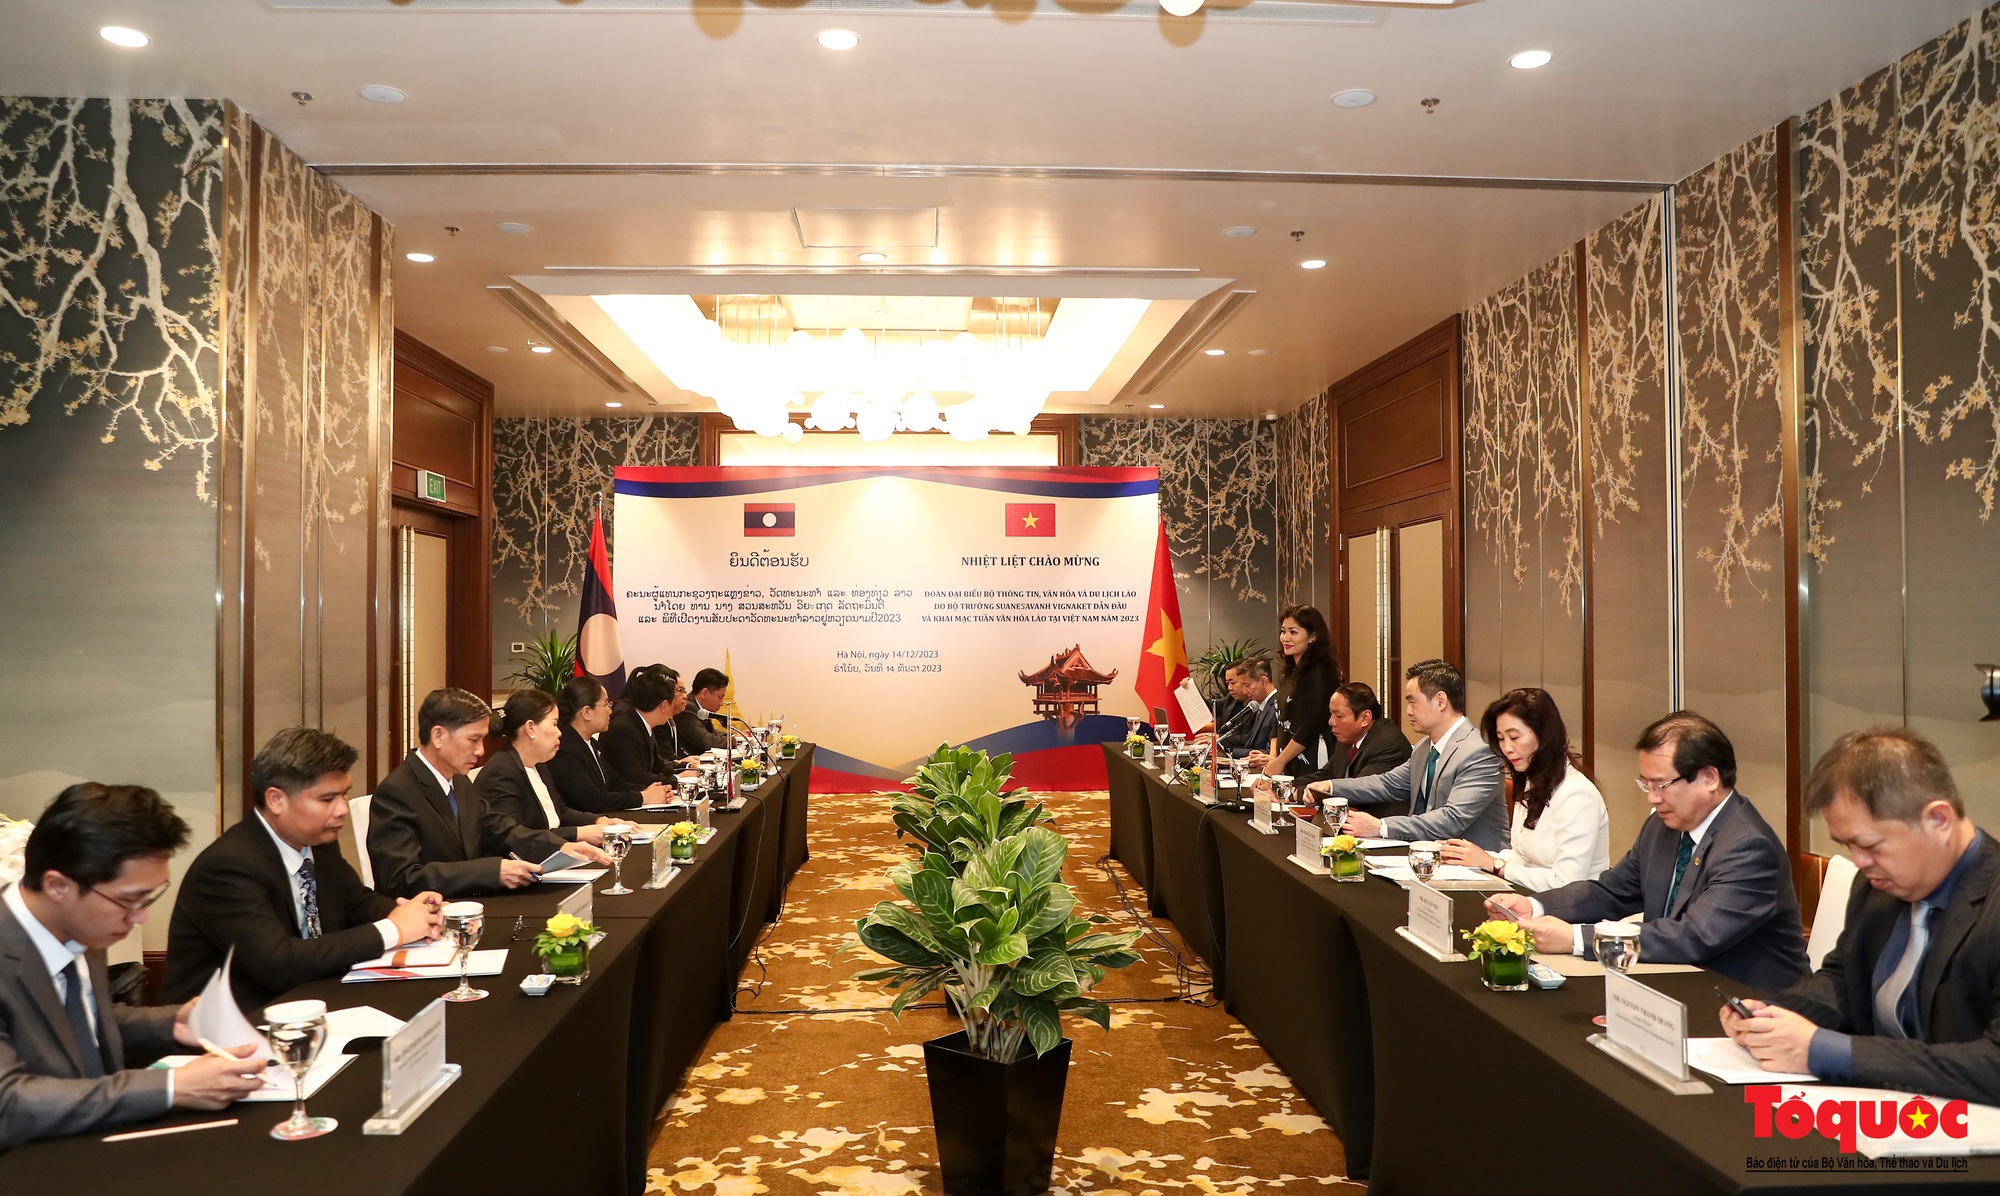 Chùm ảnh: Bộ trưởng Bộ VHTTDL Việt Nam hội đàm với Bộ Thông tin, Văn hóa và Du lịch Lào  - Ảnh 2.